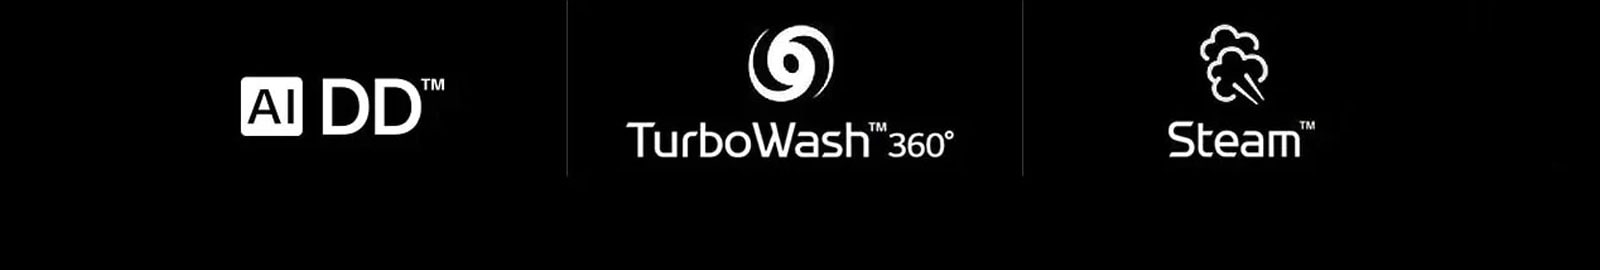 AI DD™   TurboWash™360     Steam™ 